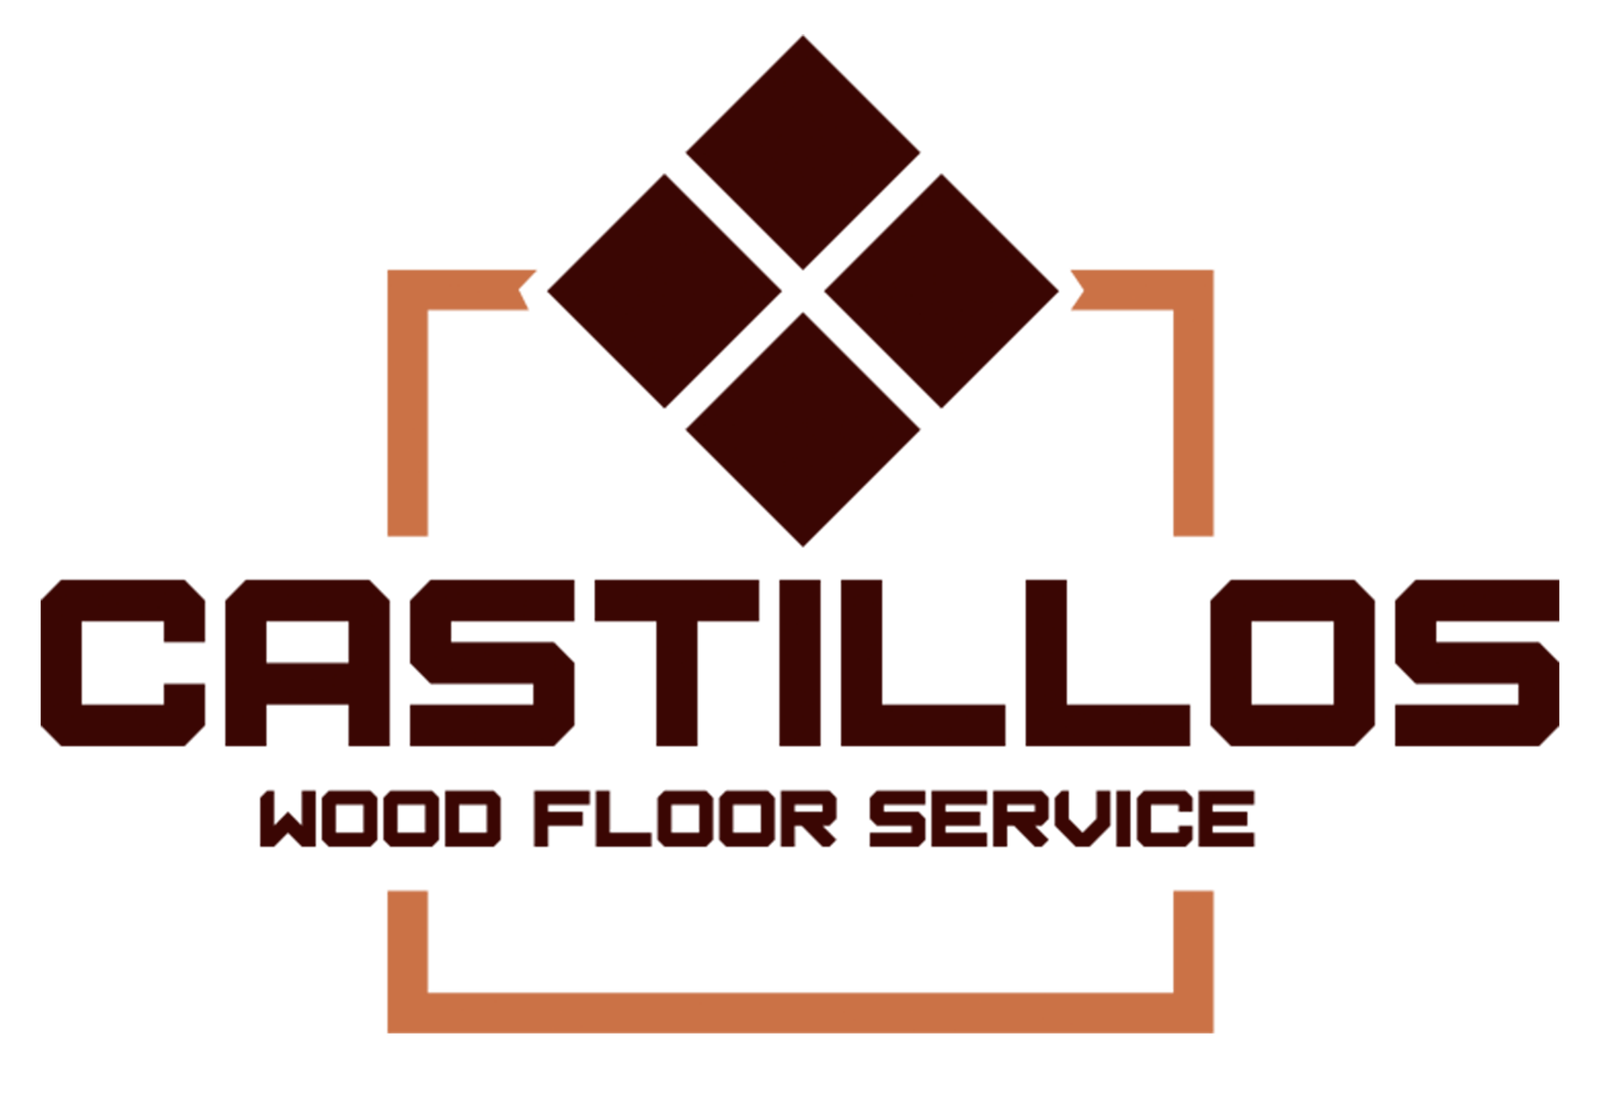 Castillos Wood Floor Service